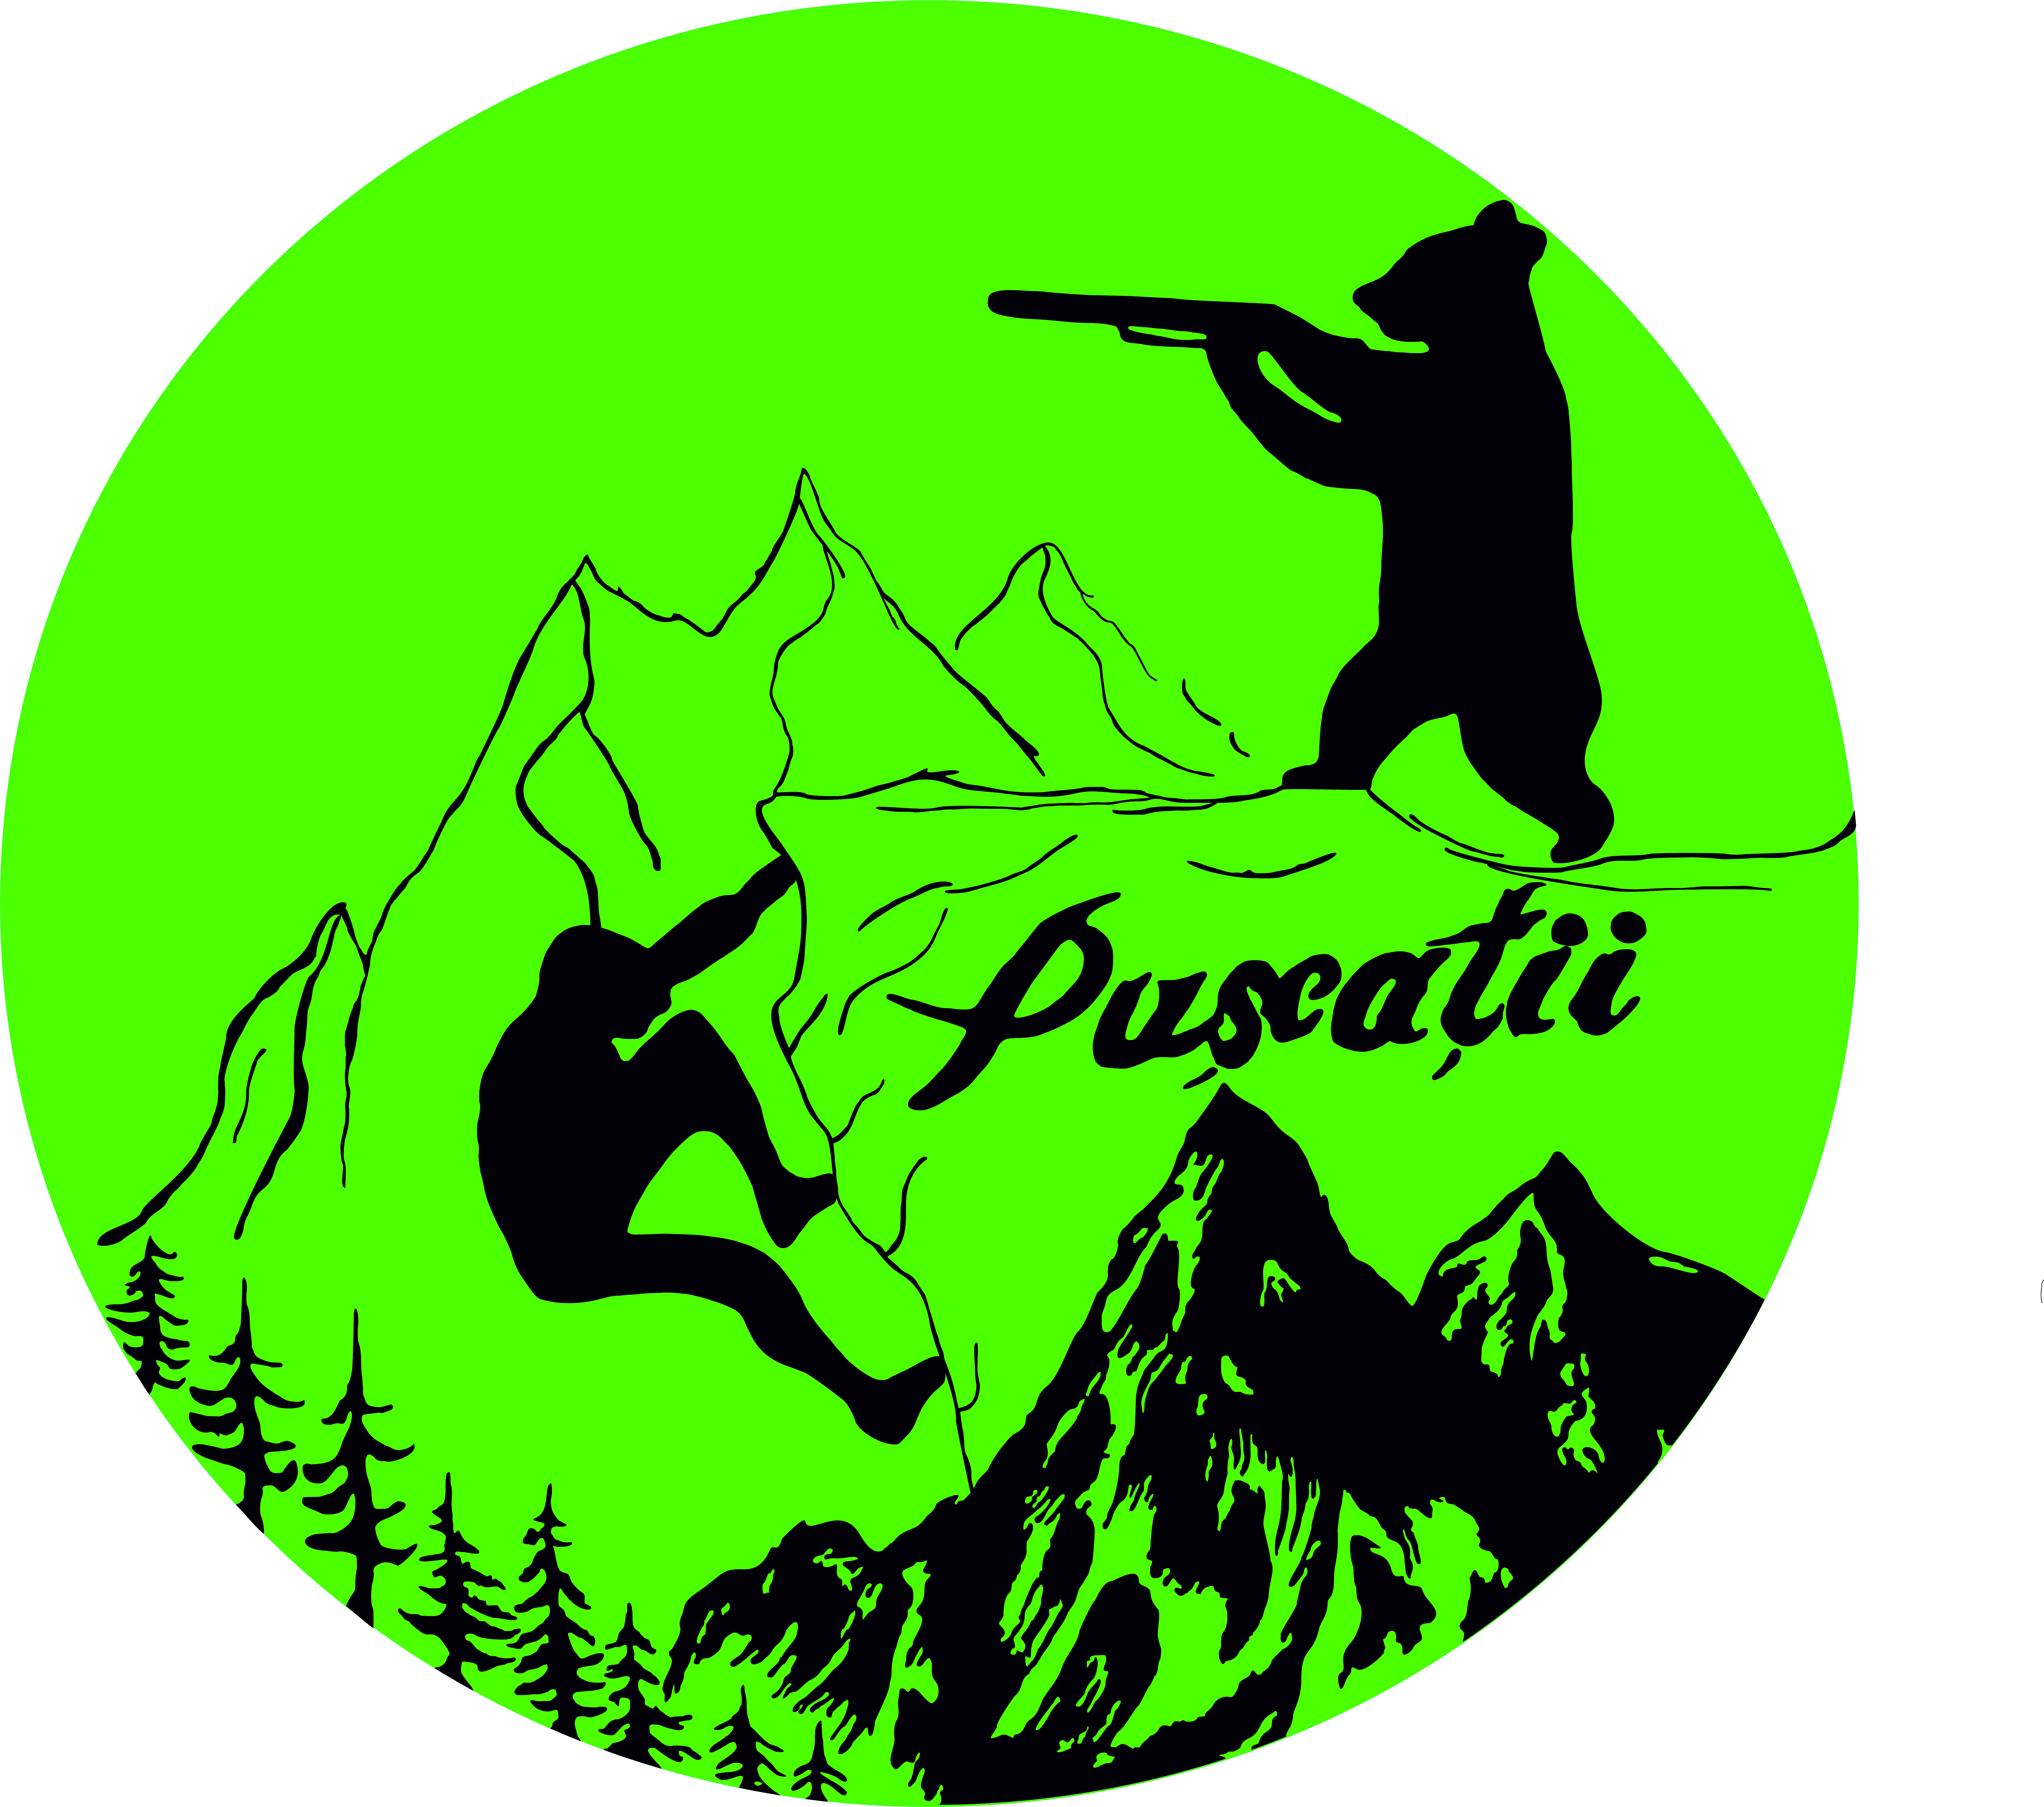 Asociatia Exploratorilor Puscatii logo